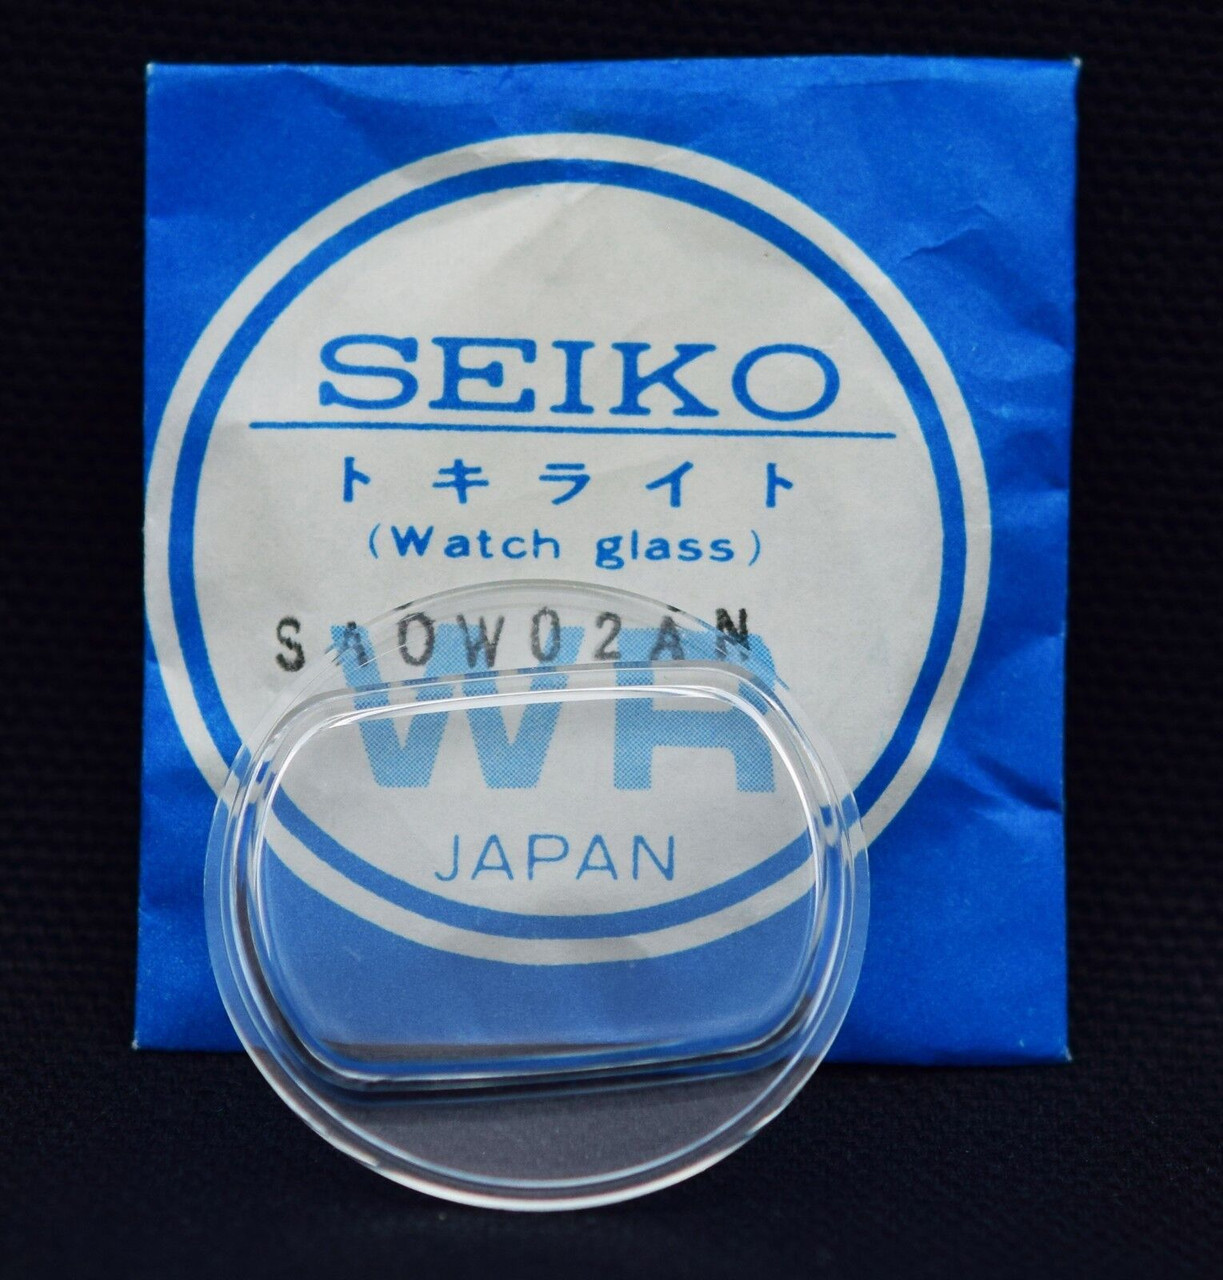 Seiko Watch Crystal SA0W02AN